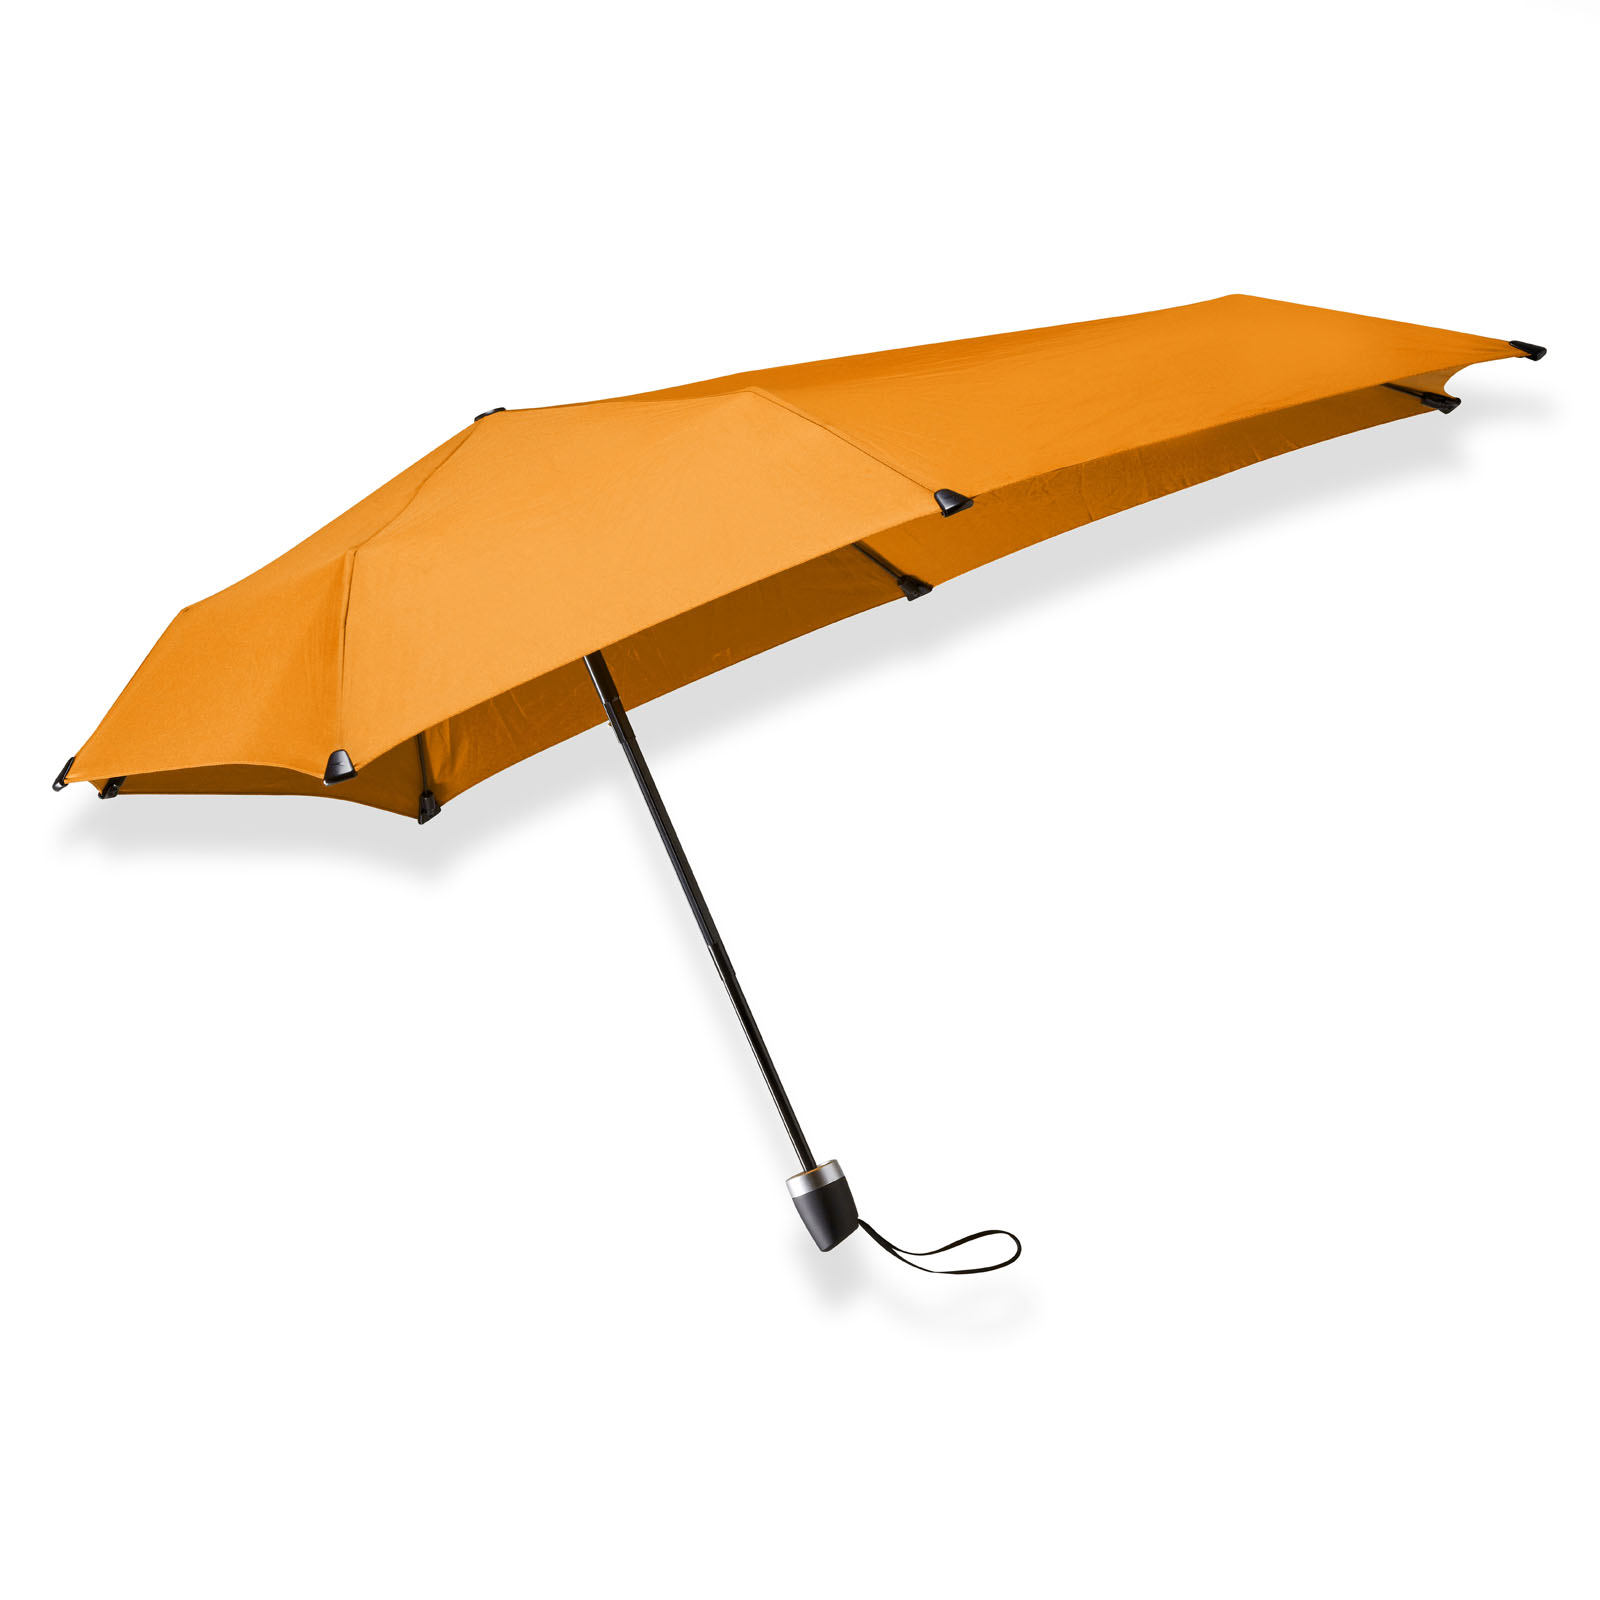 Productie zeewier Belachelijk Oranje opvouwbare paraplu mini kopen? senz° mini flame orange